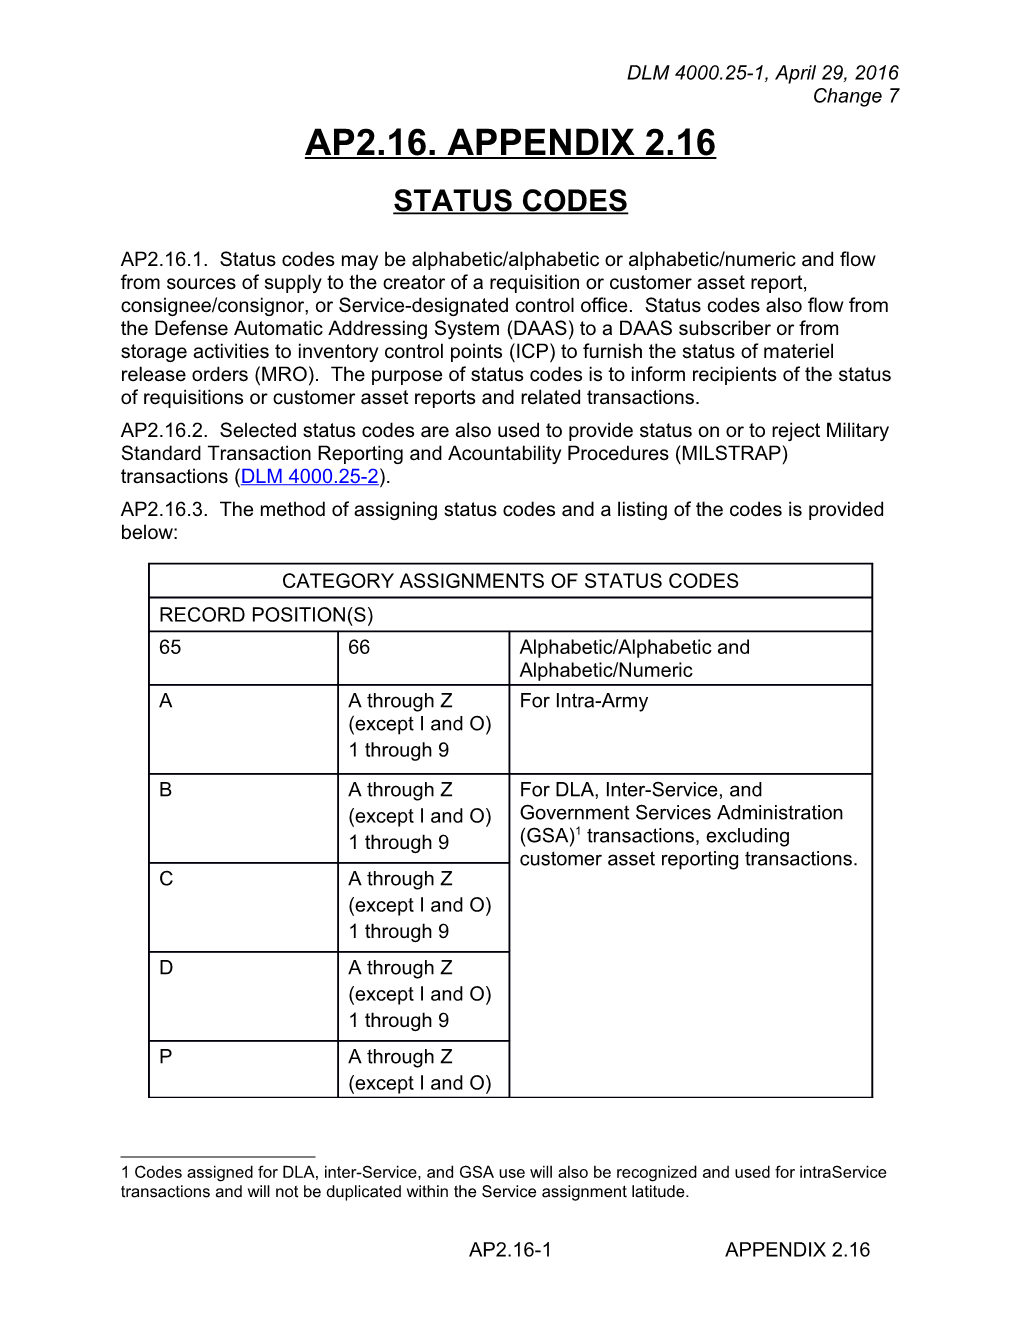 Appendix 2.16 - Status Codes